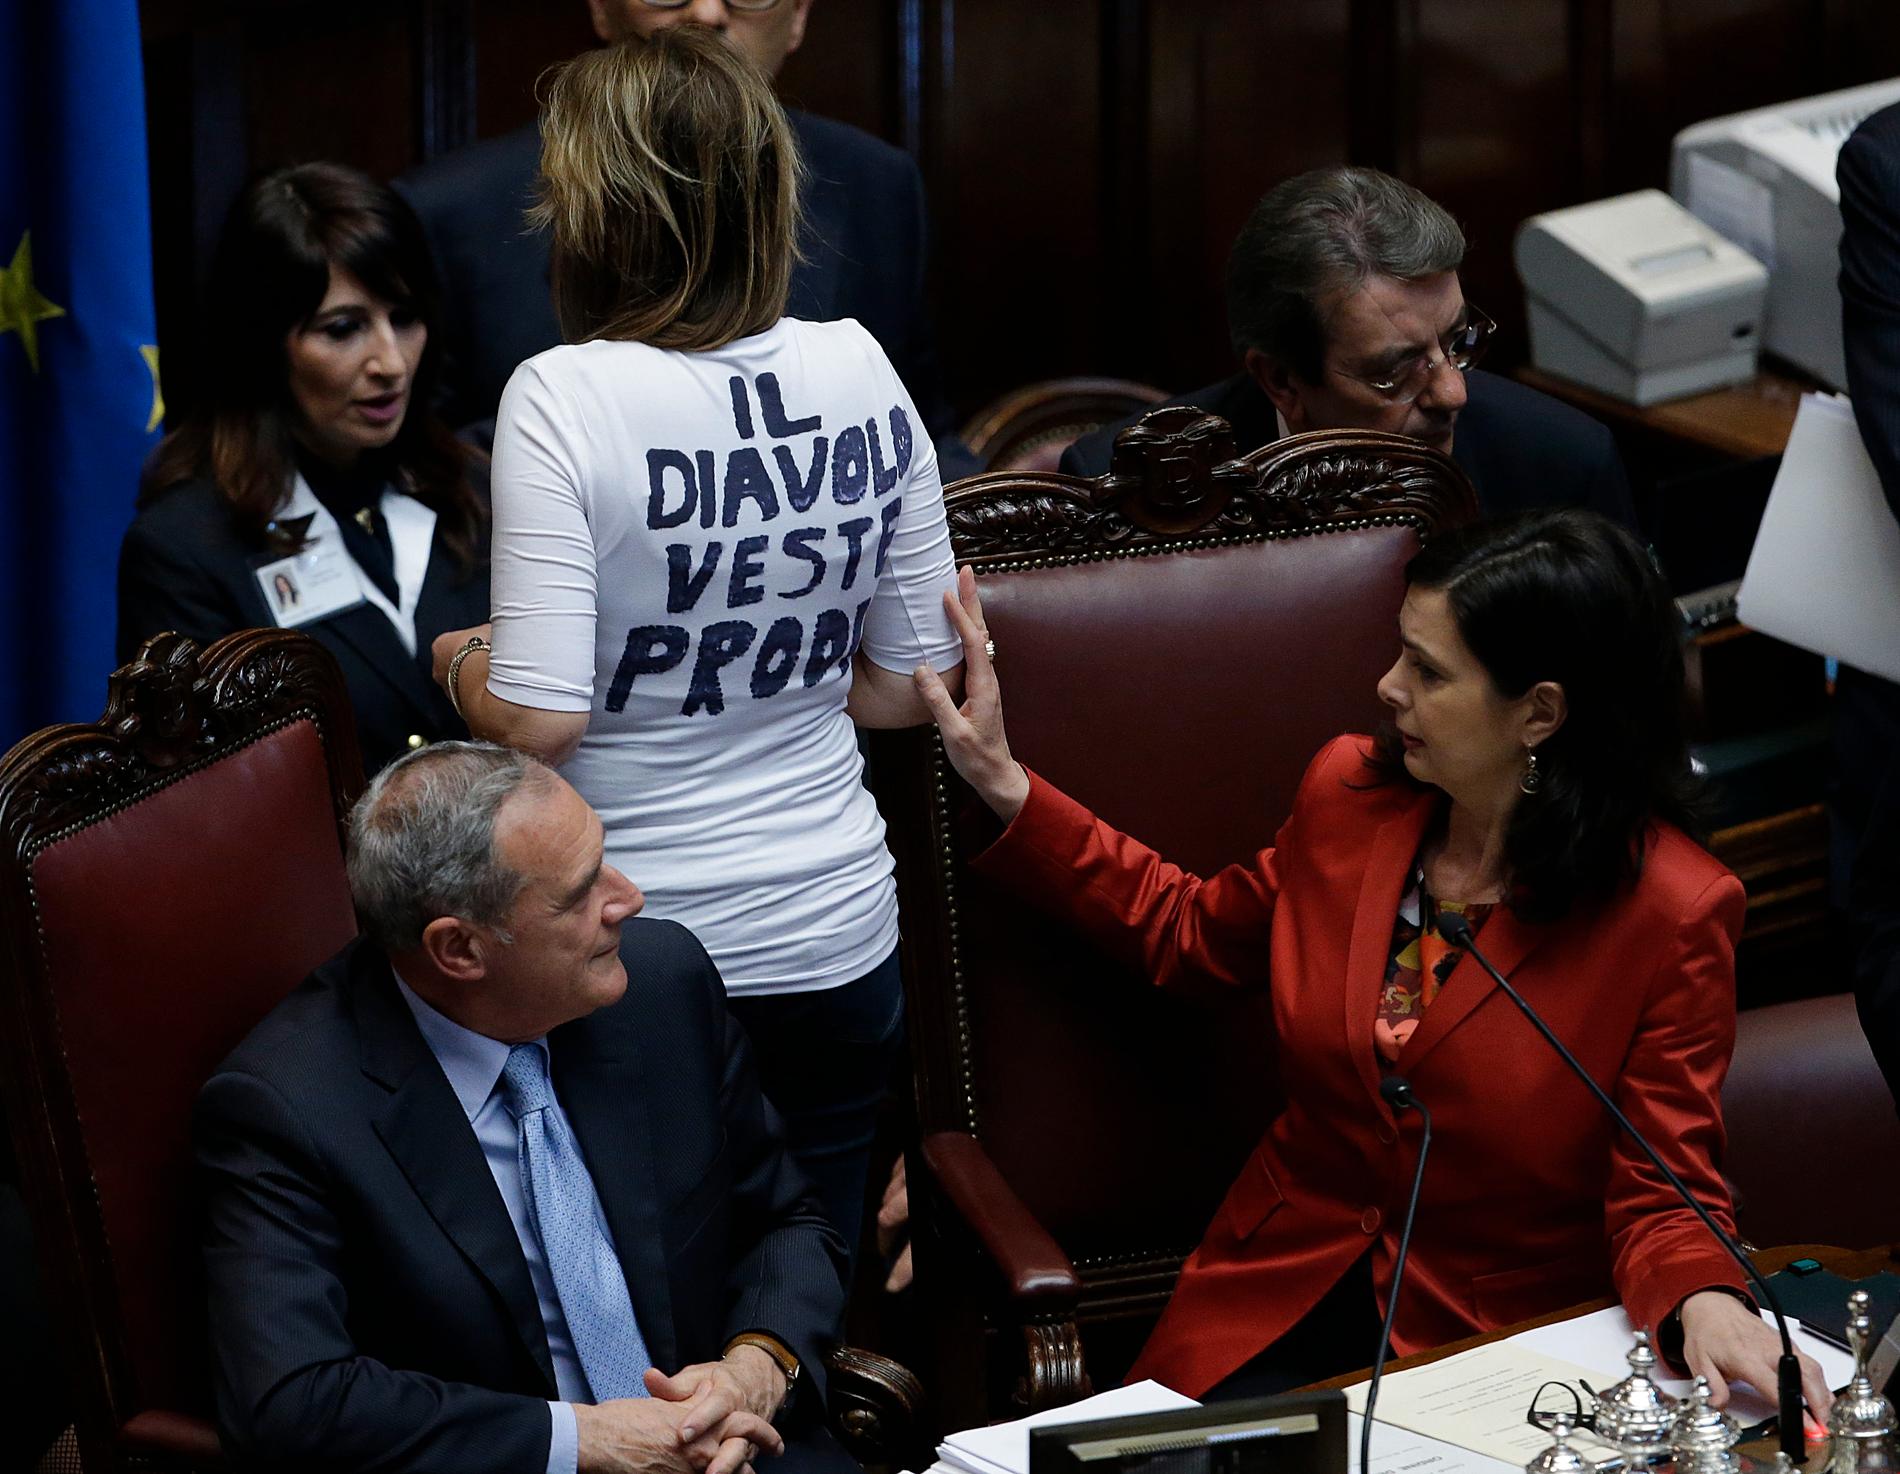 "Djävulen bär Prodi", stod det på ryggen när Alessandra Mussolini protesterade mot försöken att göra Romano Prodi till president i Italien 2013. Mussolini gör just nu sin tredje sejour som ledamot i EU-parlamentet. Arkivfoto.